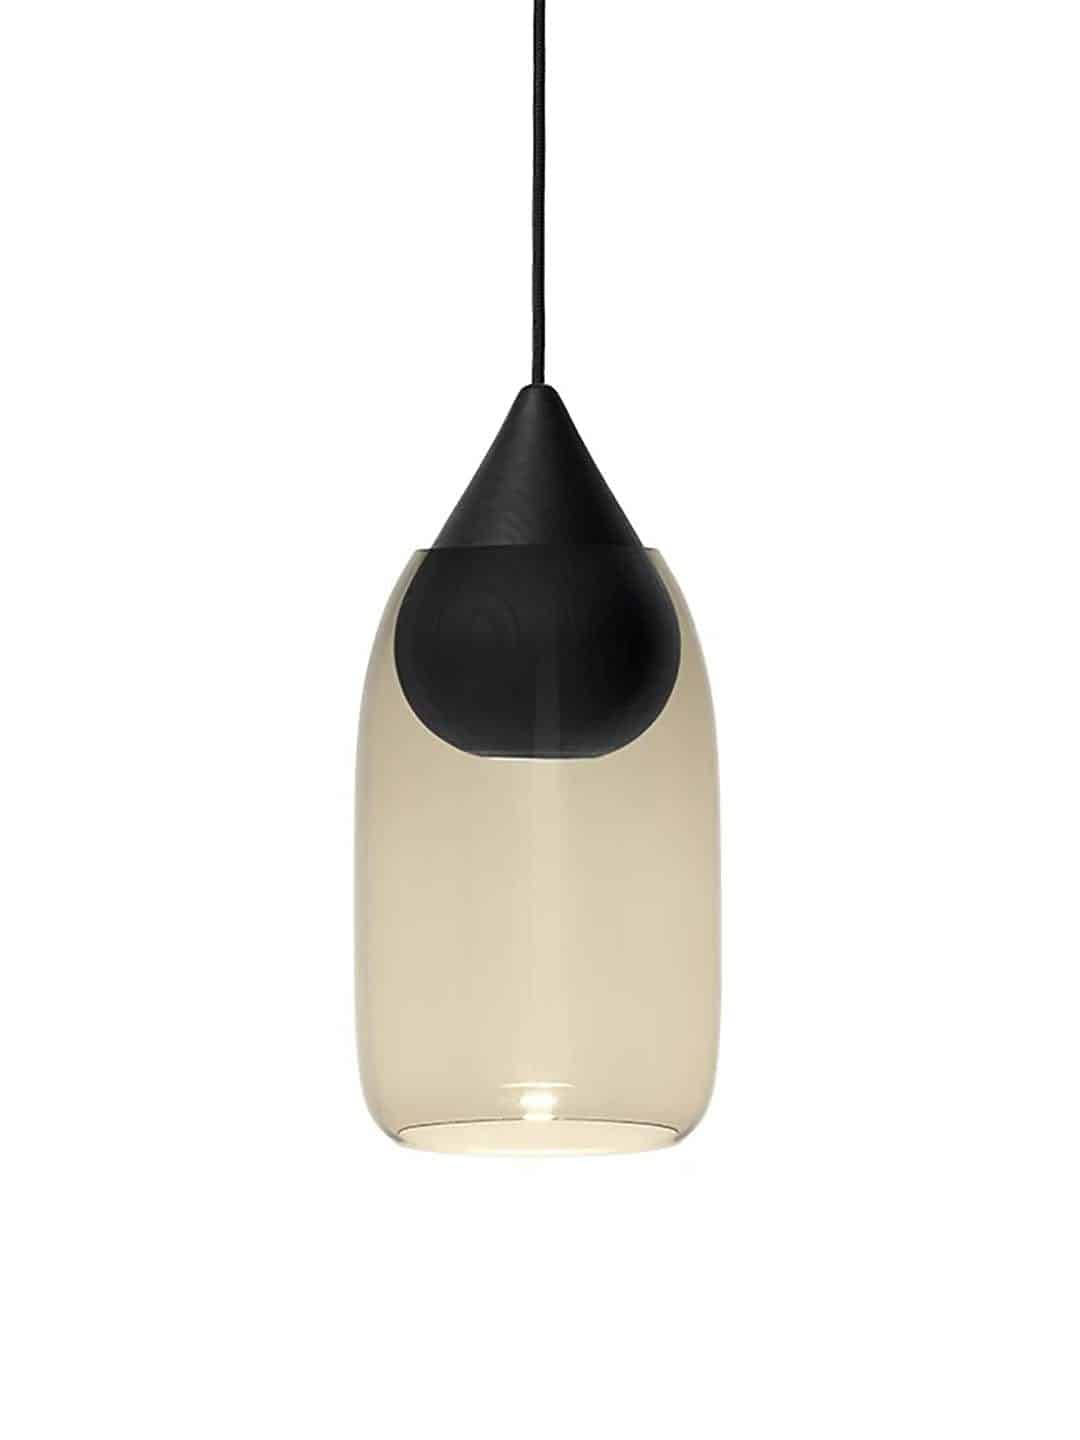 Подвесной светильник Mater Liuku Base Drop черного цвета с дымчатым стеклом на белом фоне